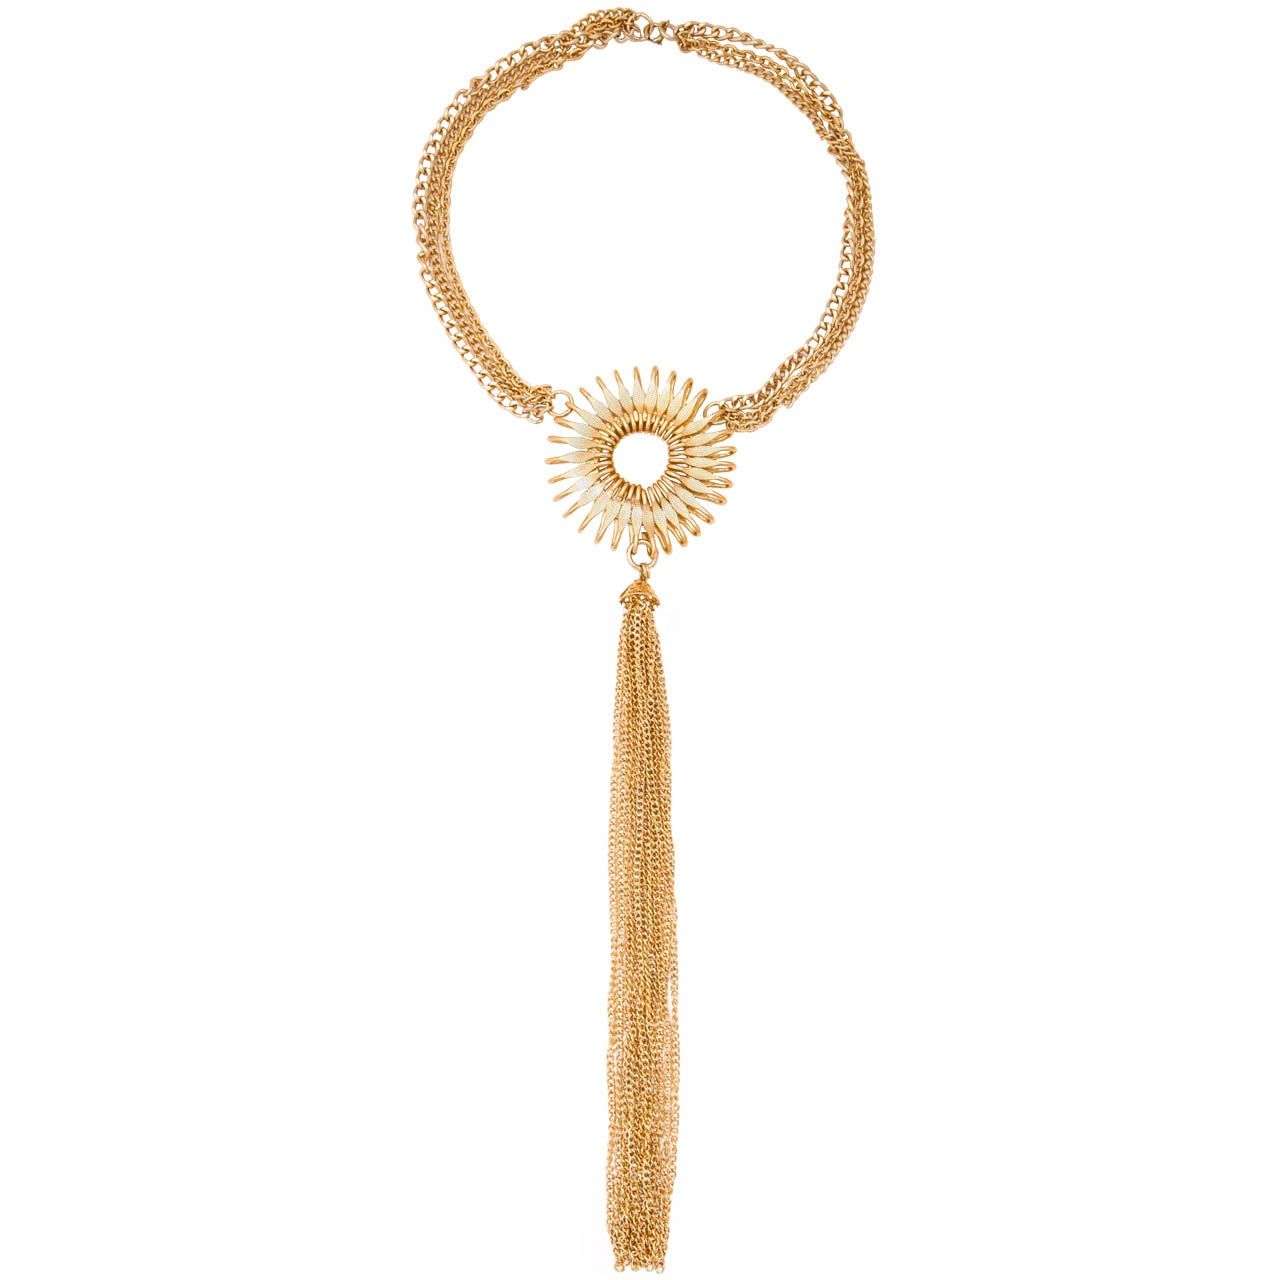 Goldfarbene Sunburst-Halskette mit langer Quaste, Kostümschmuck